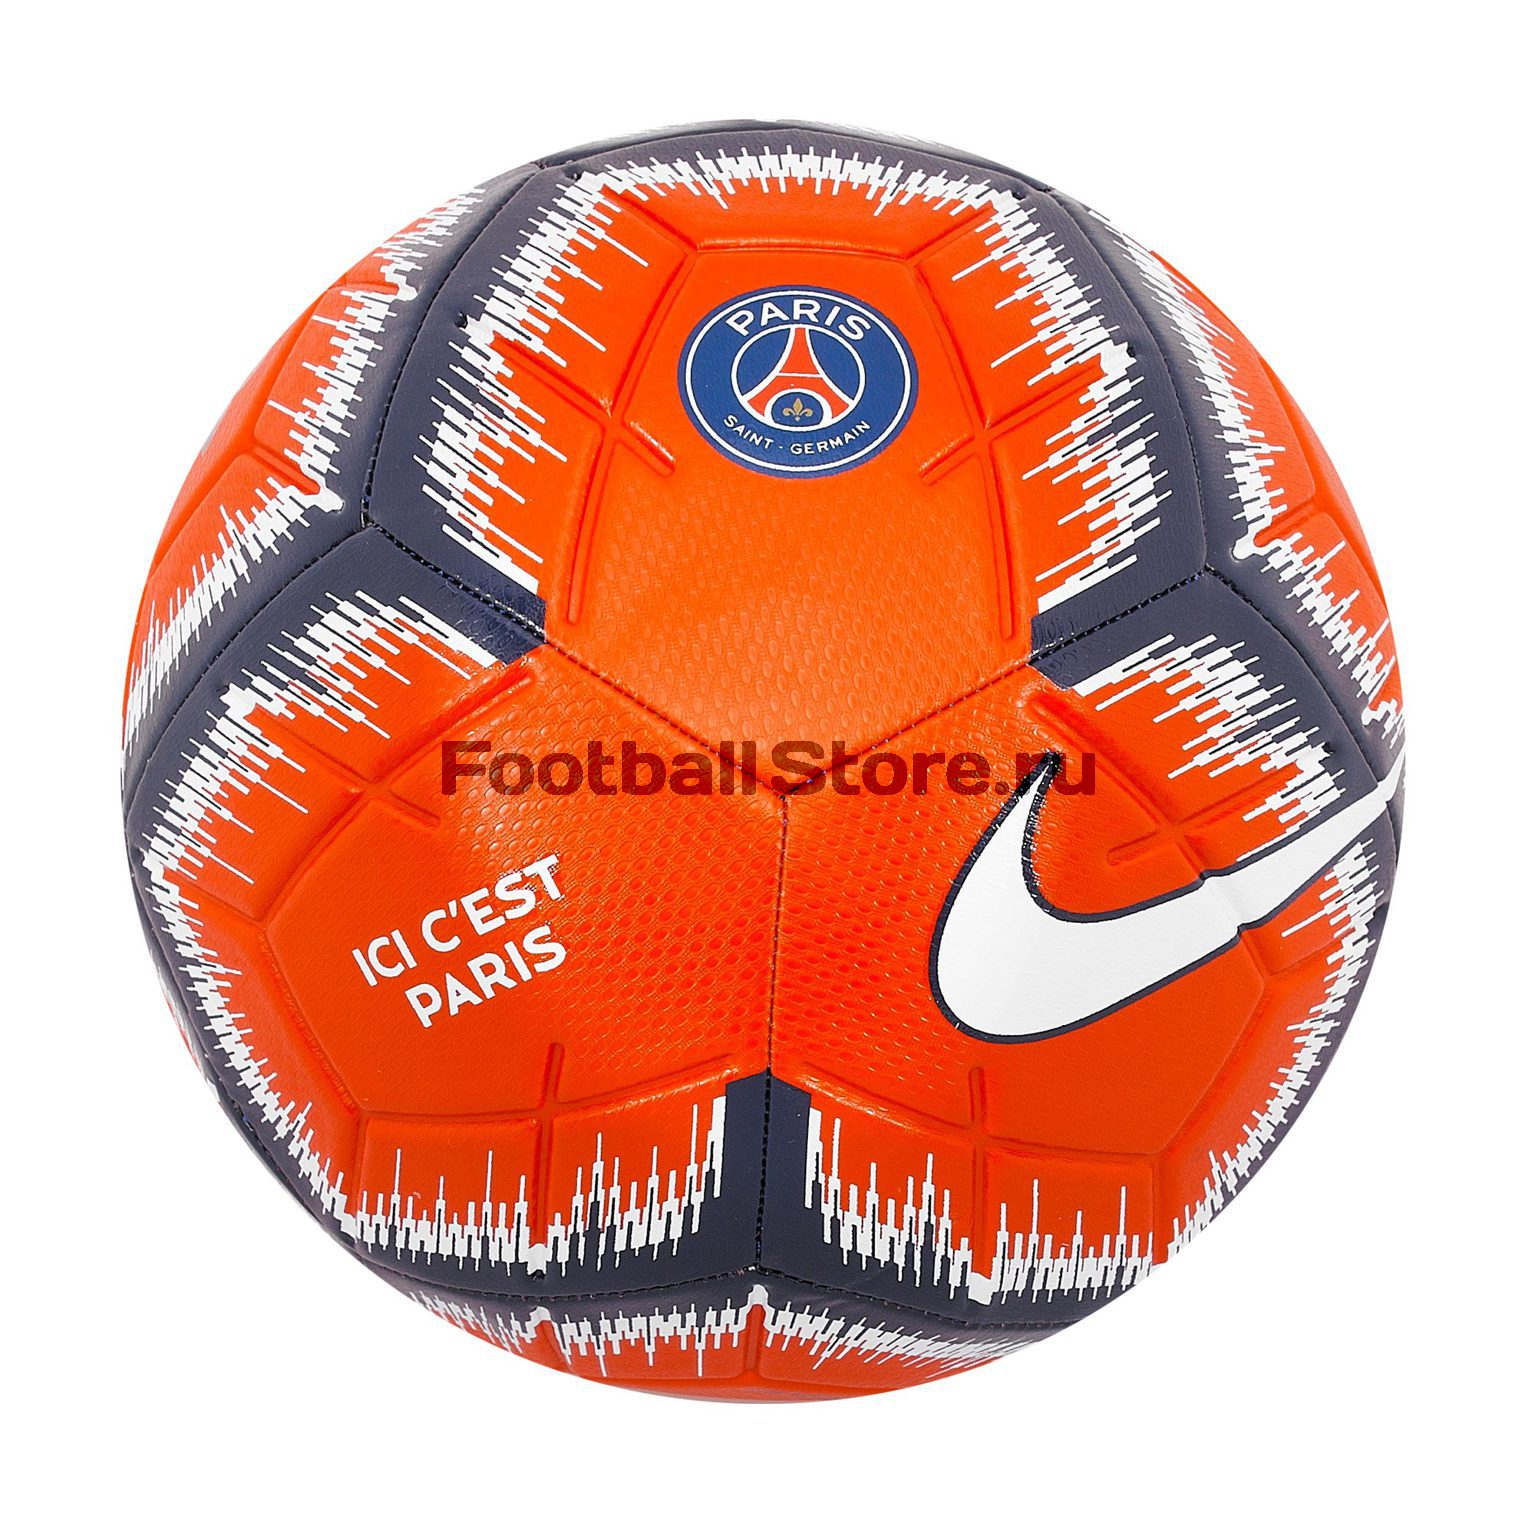 Футбольный мяч Nike PSG Strike SC3504-600